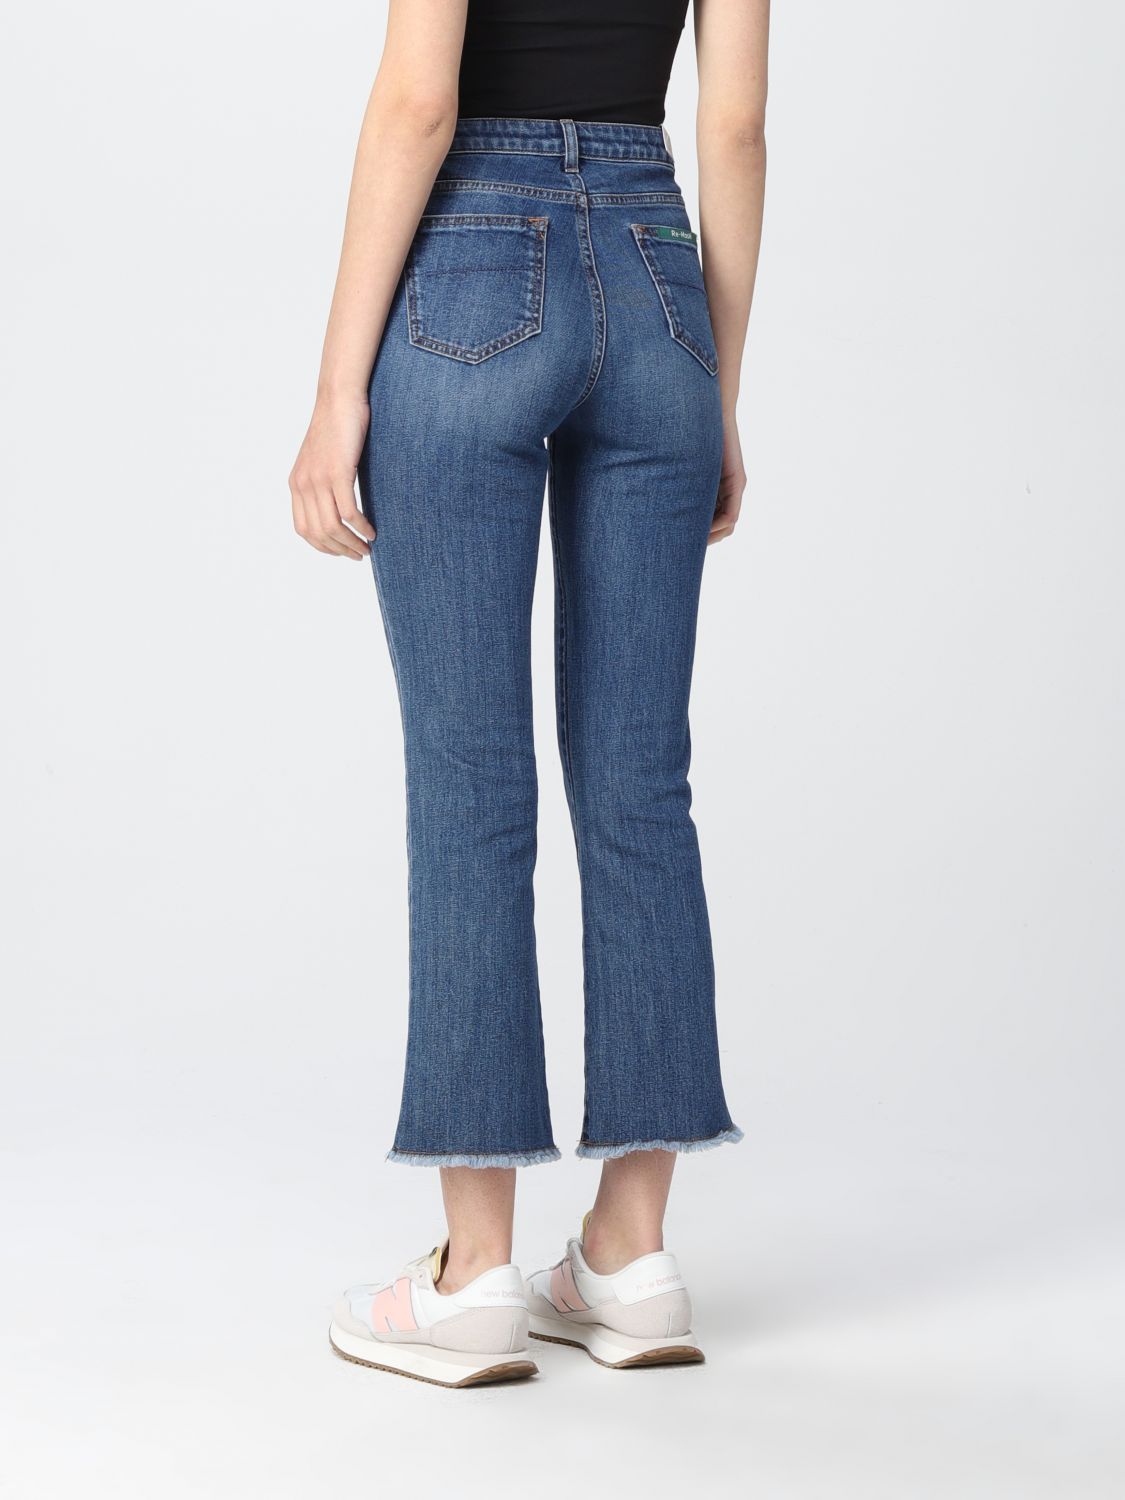 Jeans Re-Hash: Re-Hash Damen jeans blau 2